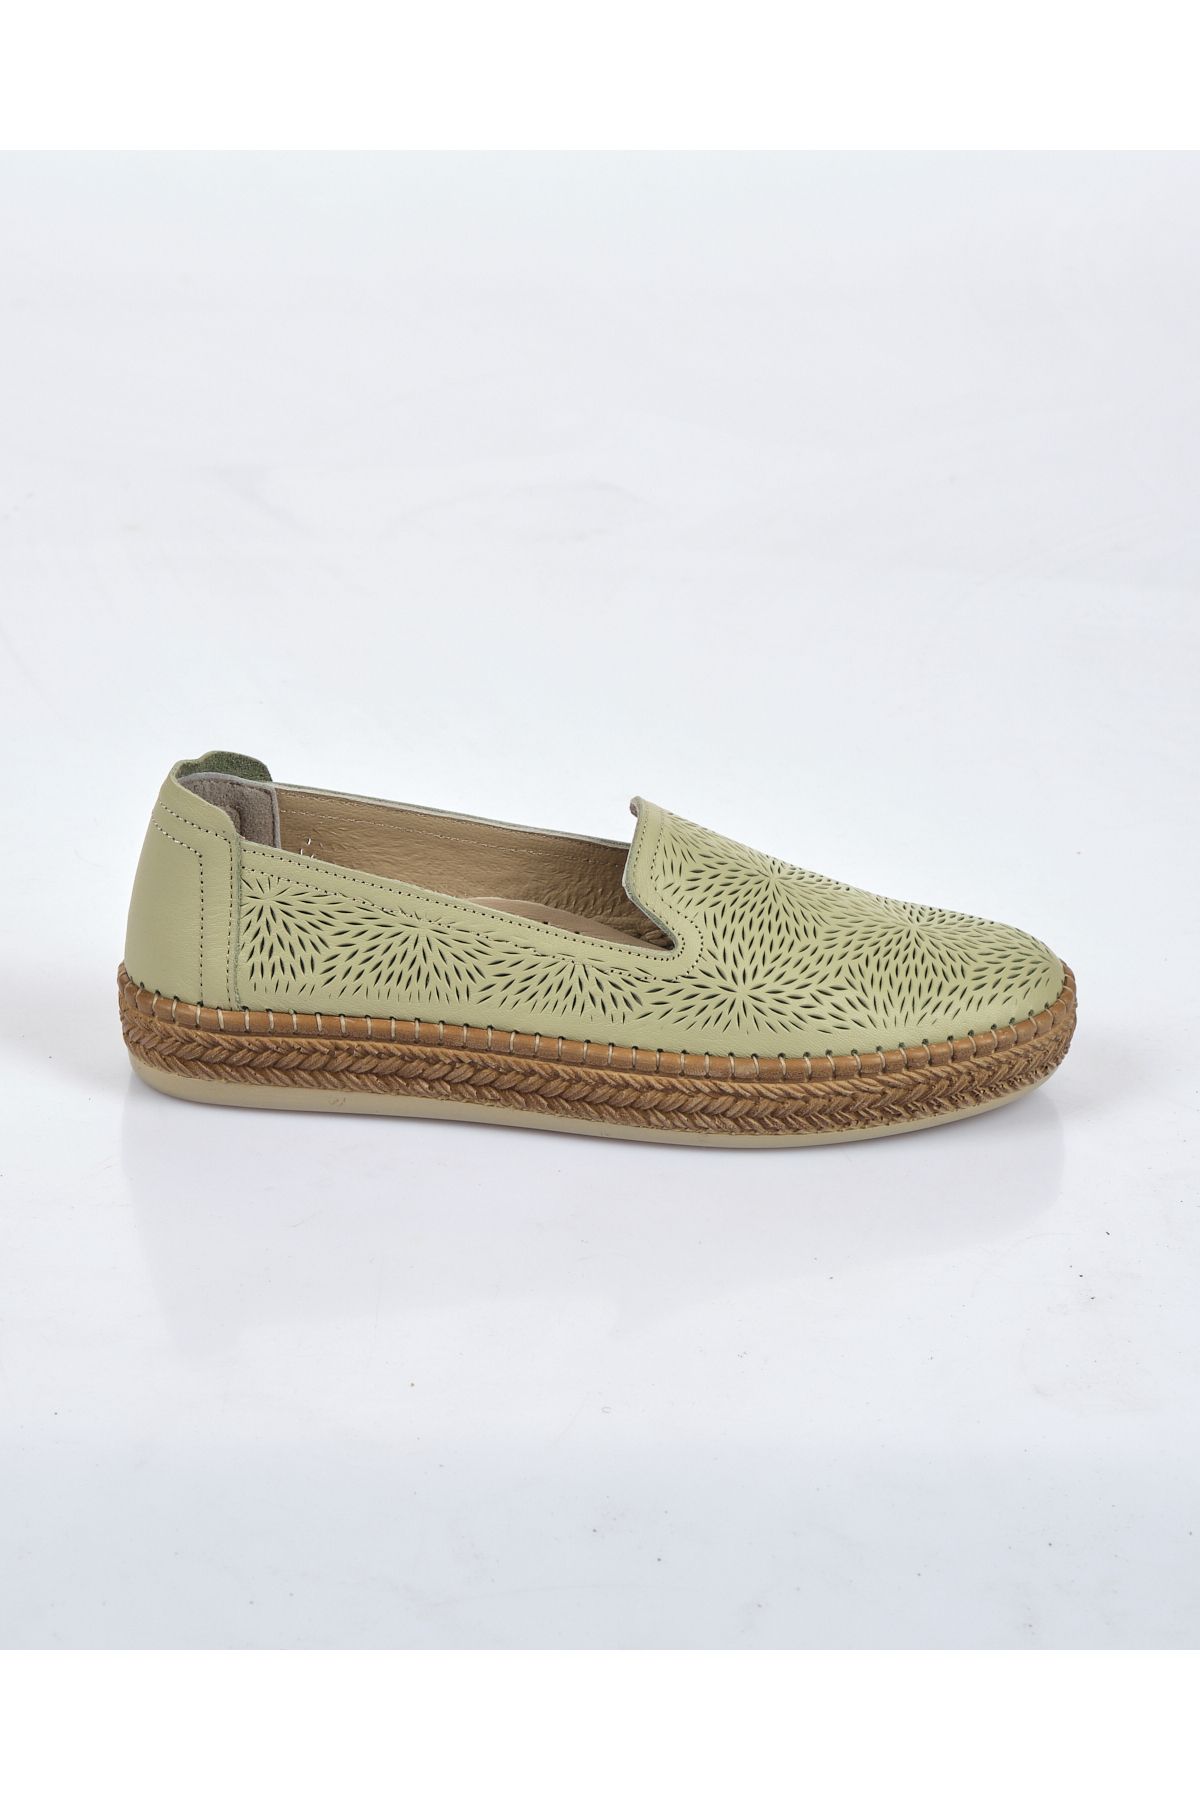 Pierre Cardin Su Yeşili Kadın Ayakkabı Pc-52323